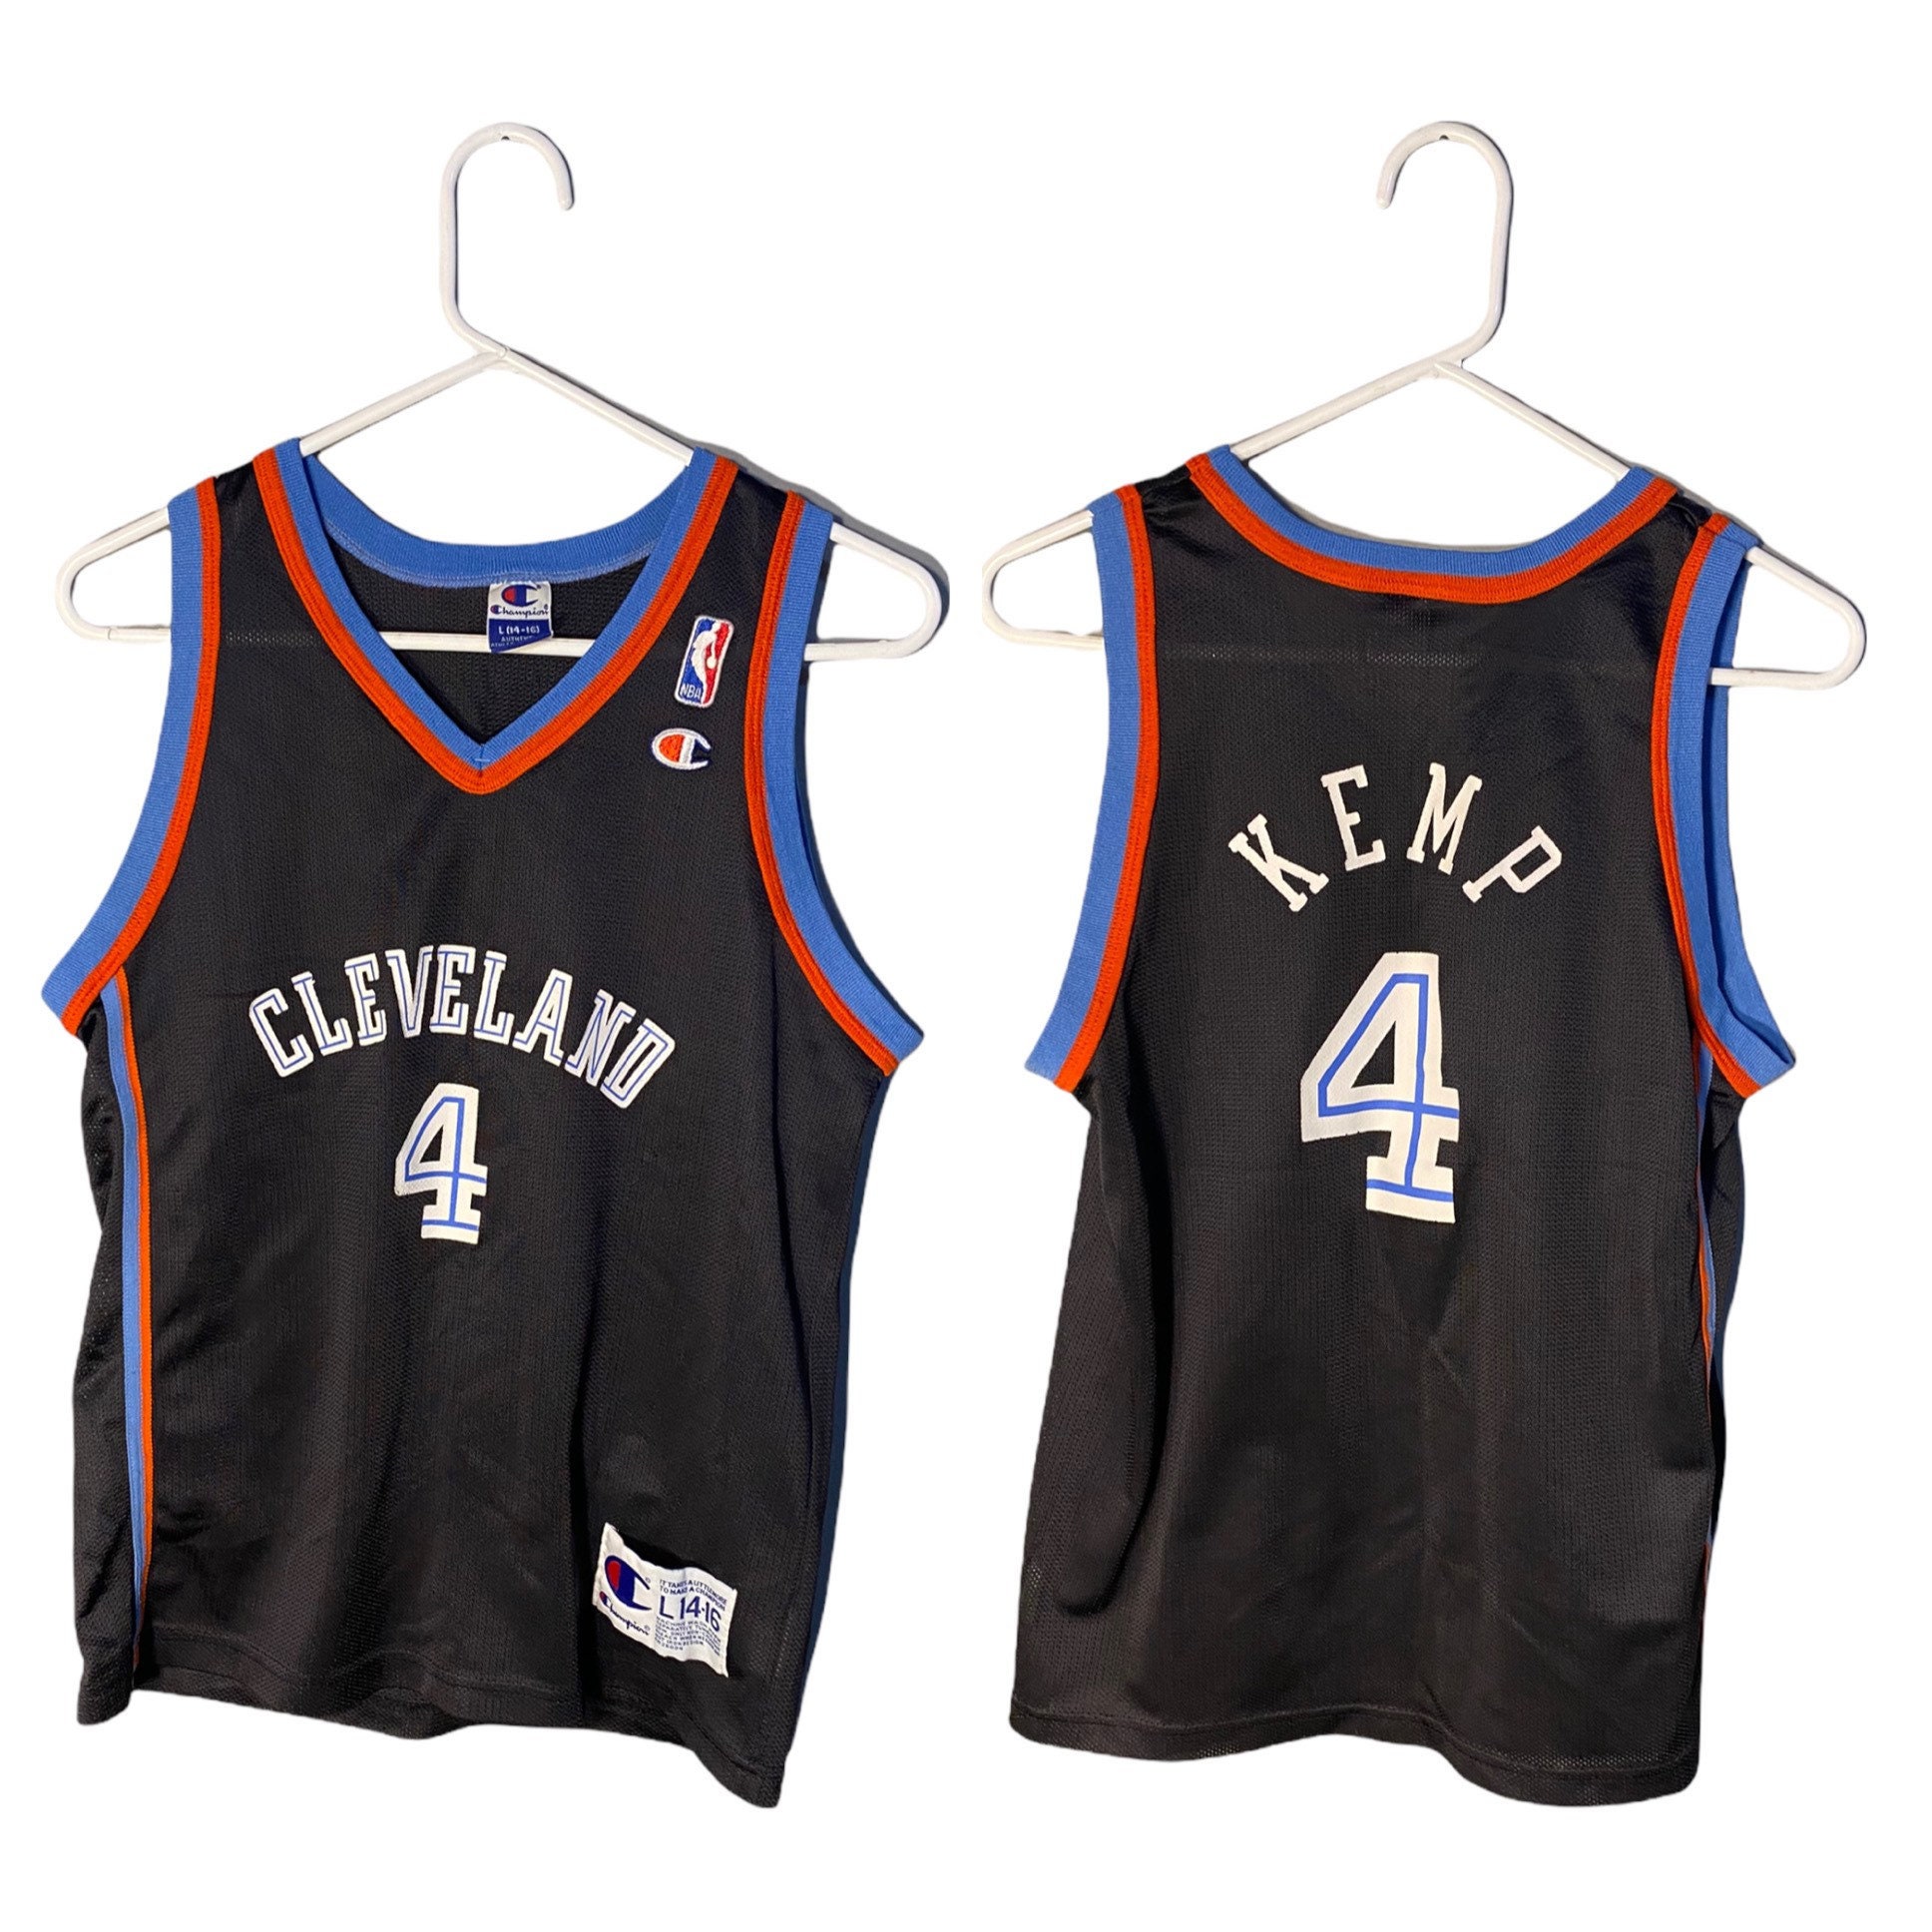 Nike Team DERRICK ROSE CHICAGO BULLS #5 Mvp Basketball Jersey Size XL + 2